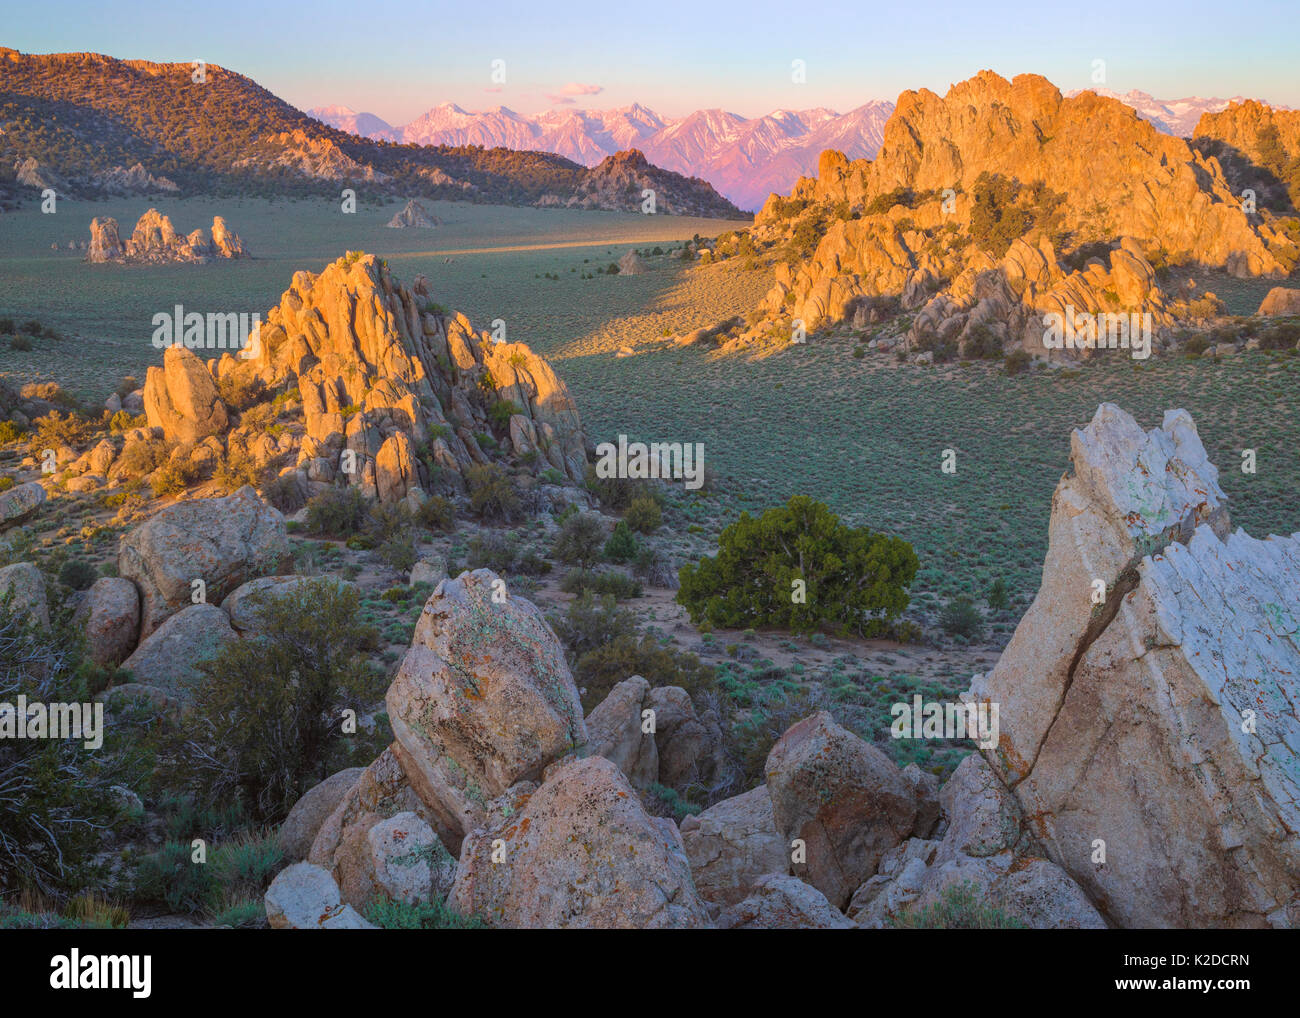 Montagnes d'Inyo armoise avec des vallées, des affleurements rocheux, Pinyon pines, Juniper arbres et une vue sur la Sierra Nevada, en Californie, USA, mai. Banque D'Images